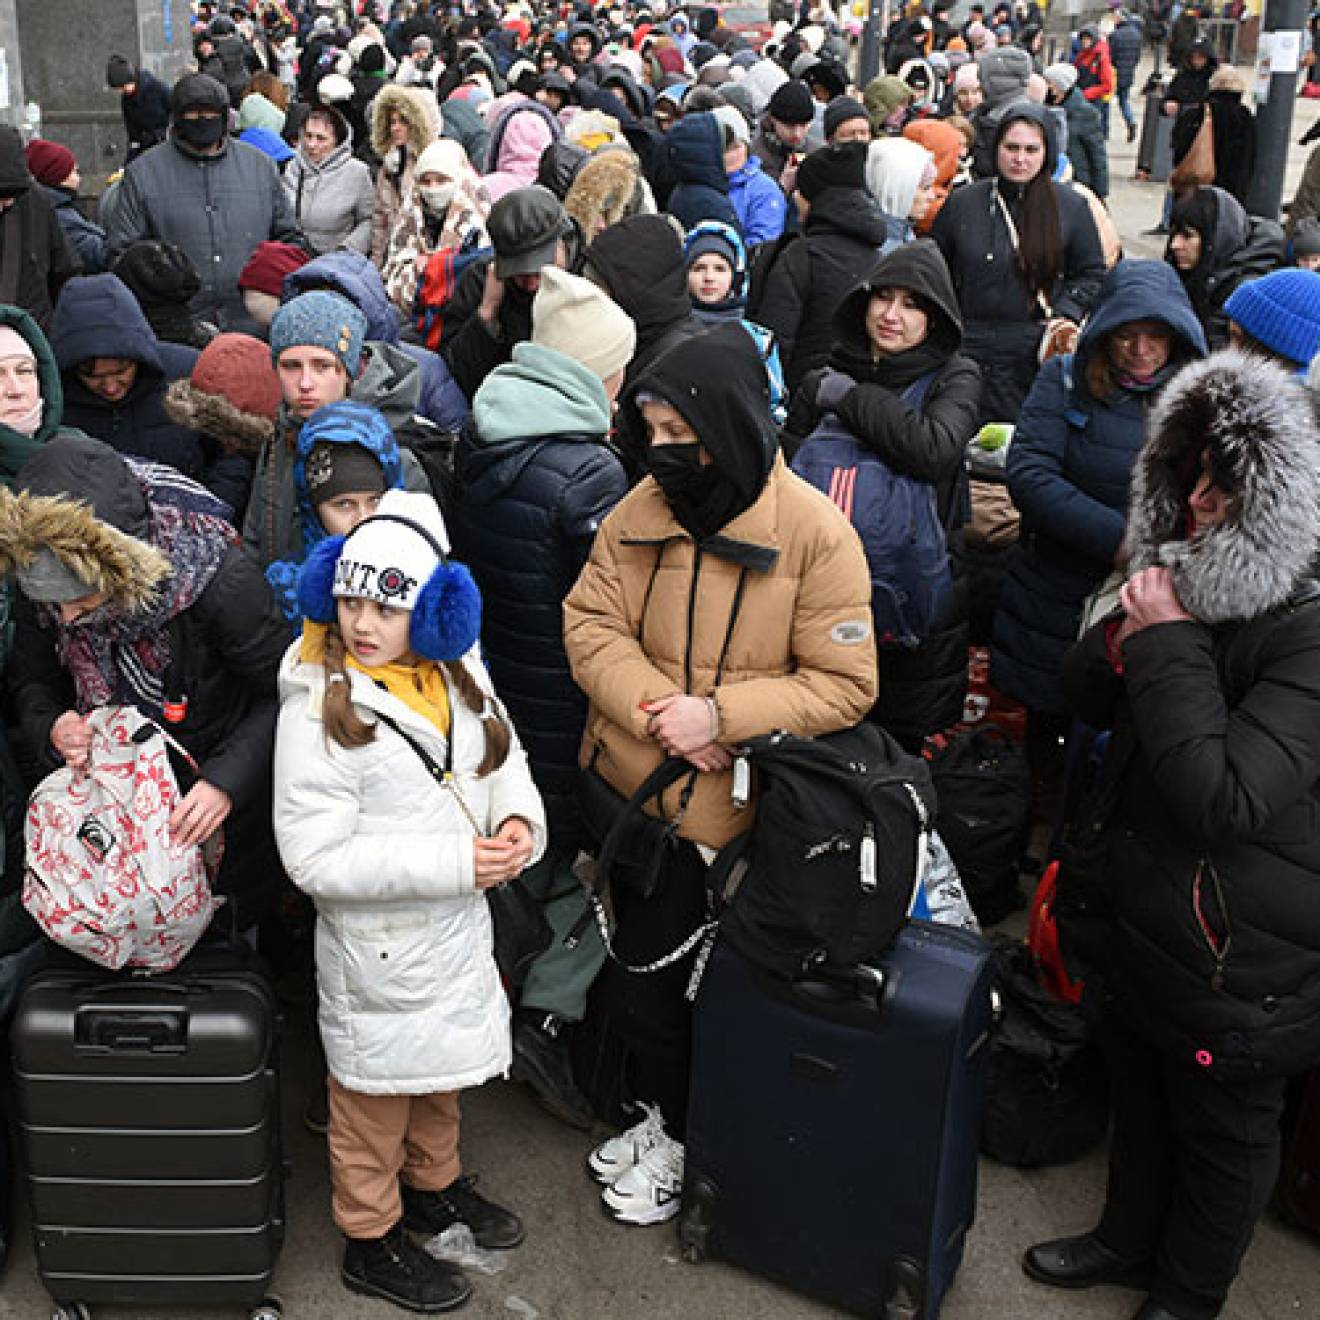 A crowd of Ukrainian refugees